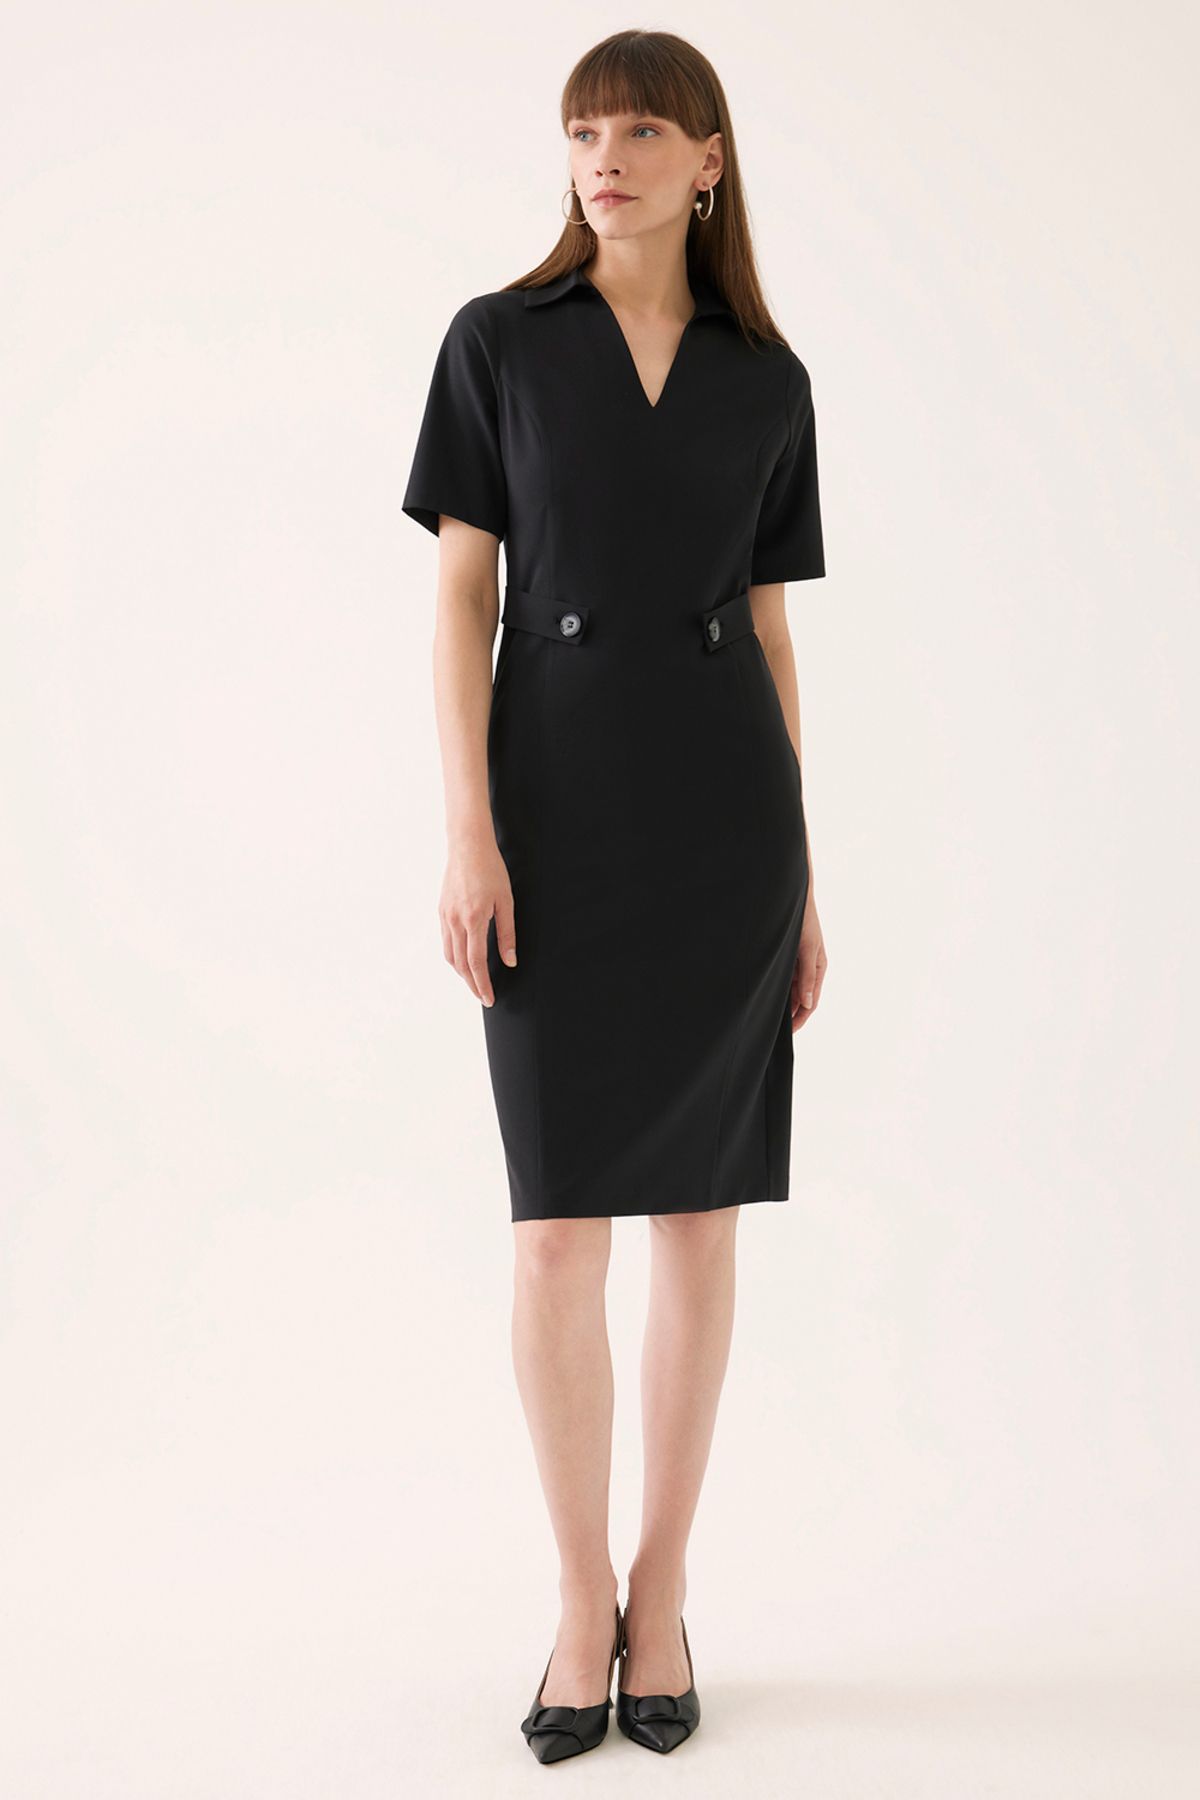 Perspective Agatha Slim Fit Diz Altı Takma Kol V-Yaka Siyah Renk Elbise